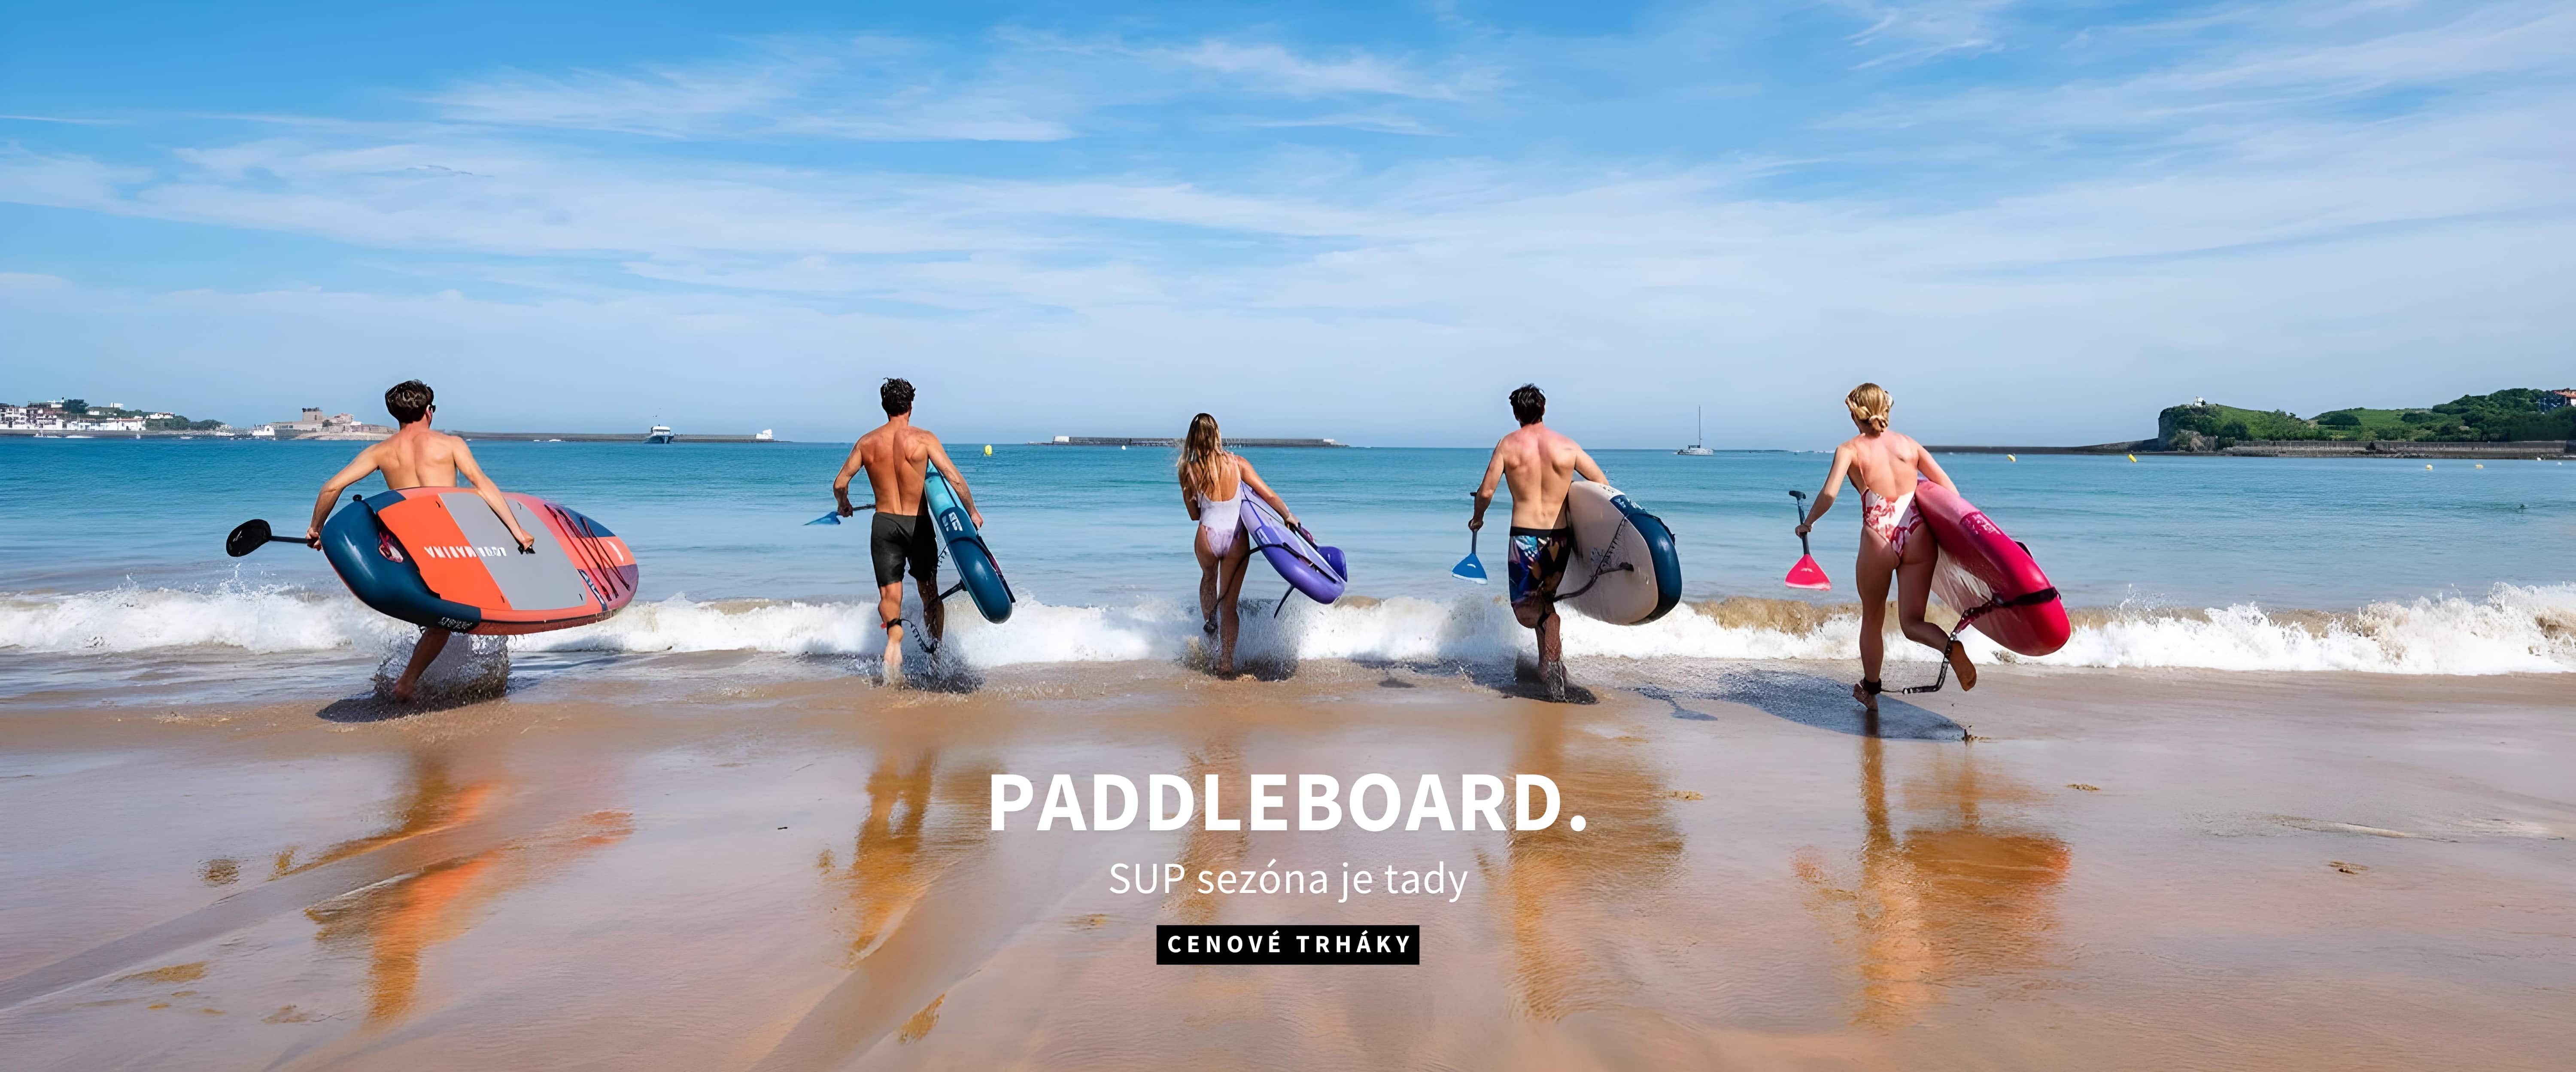 Paddleboardy | desktop